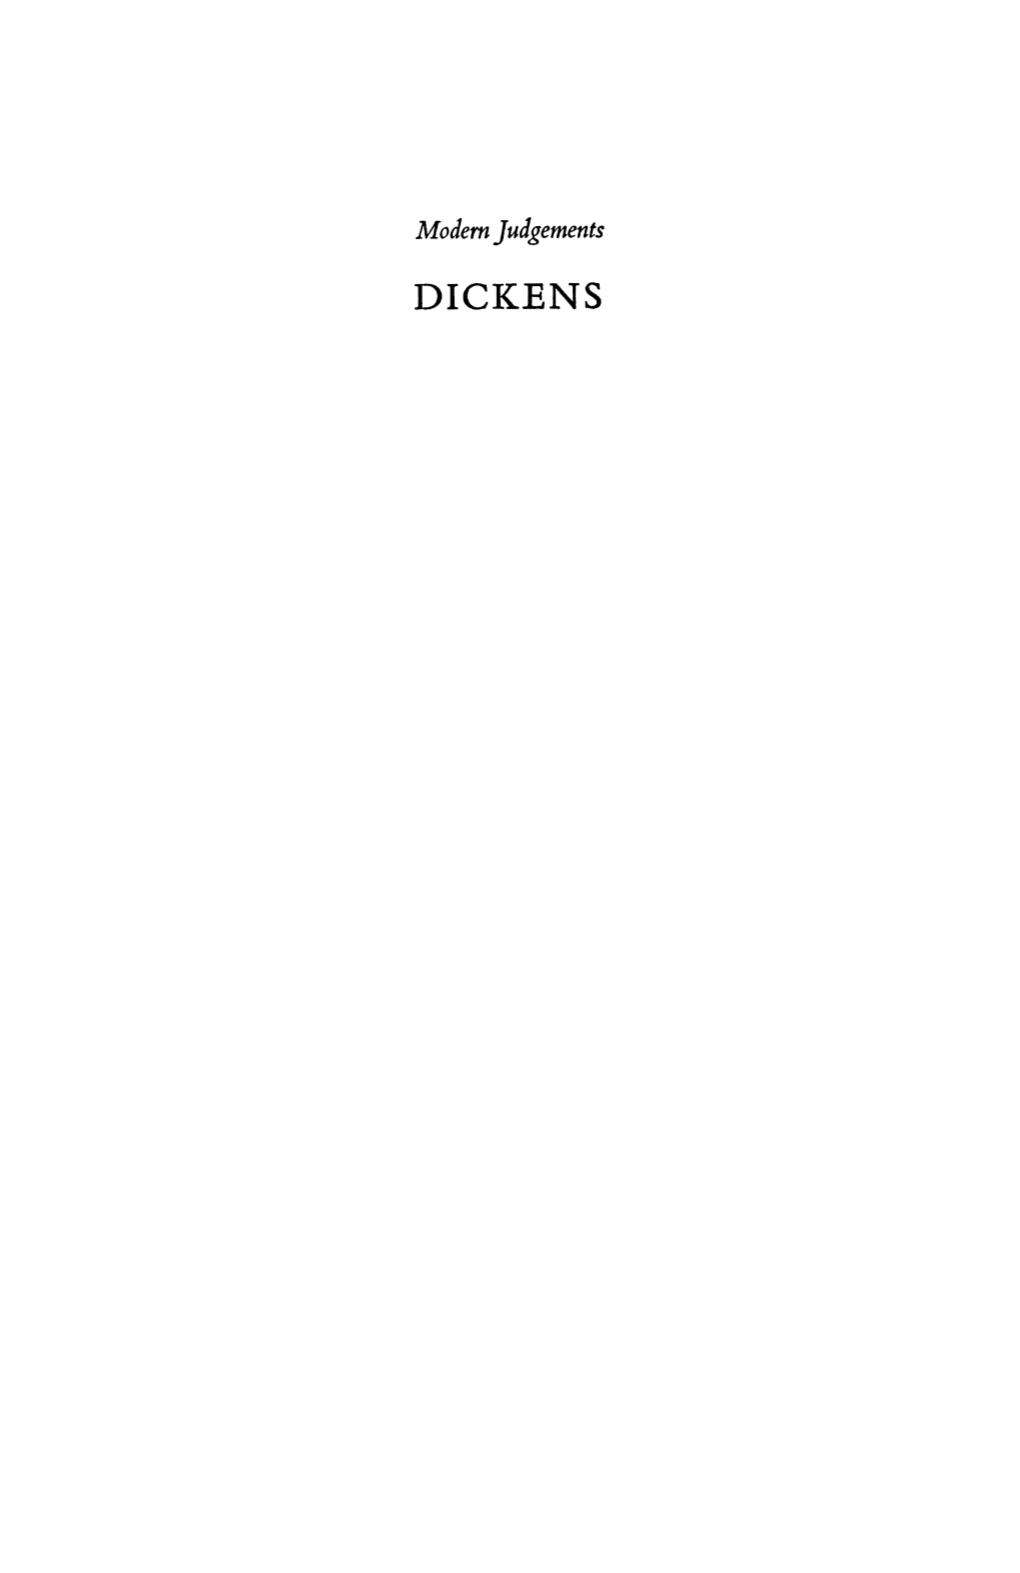 Dickens Modern Judgements